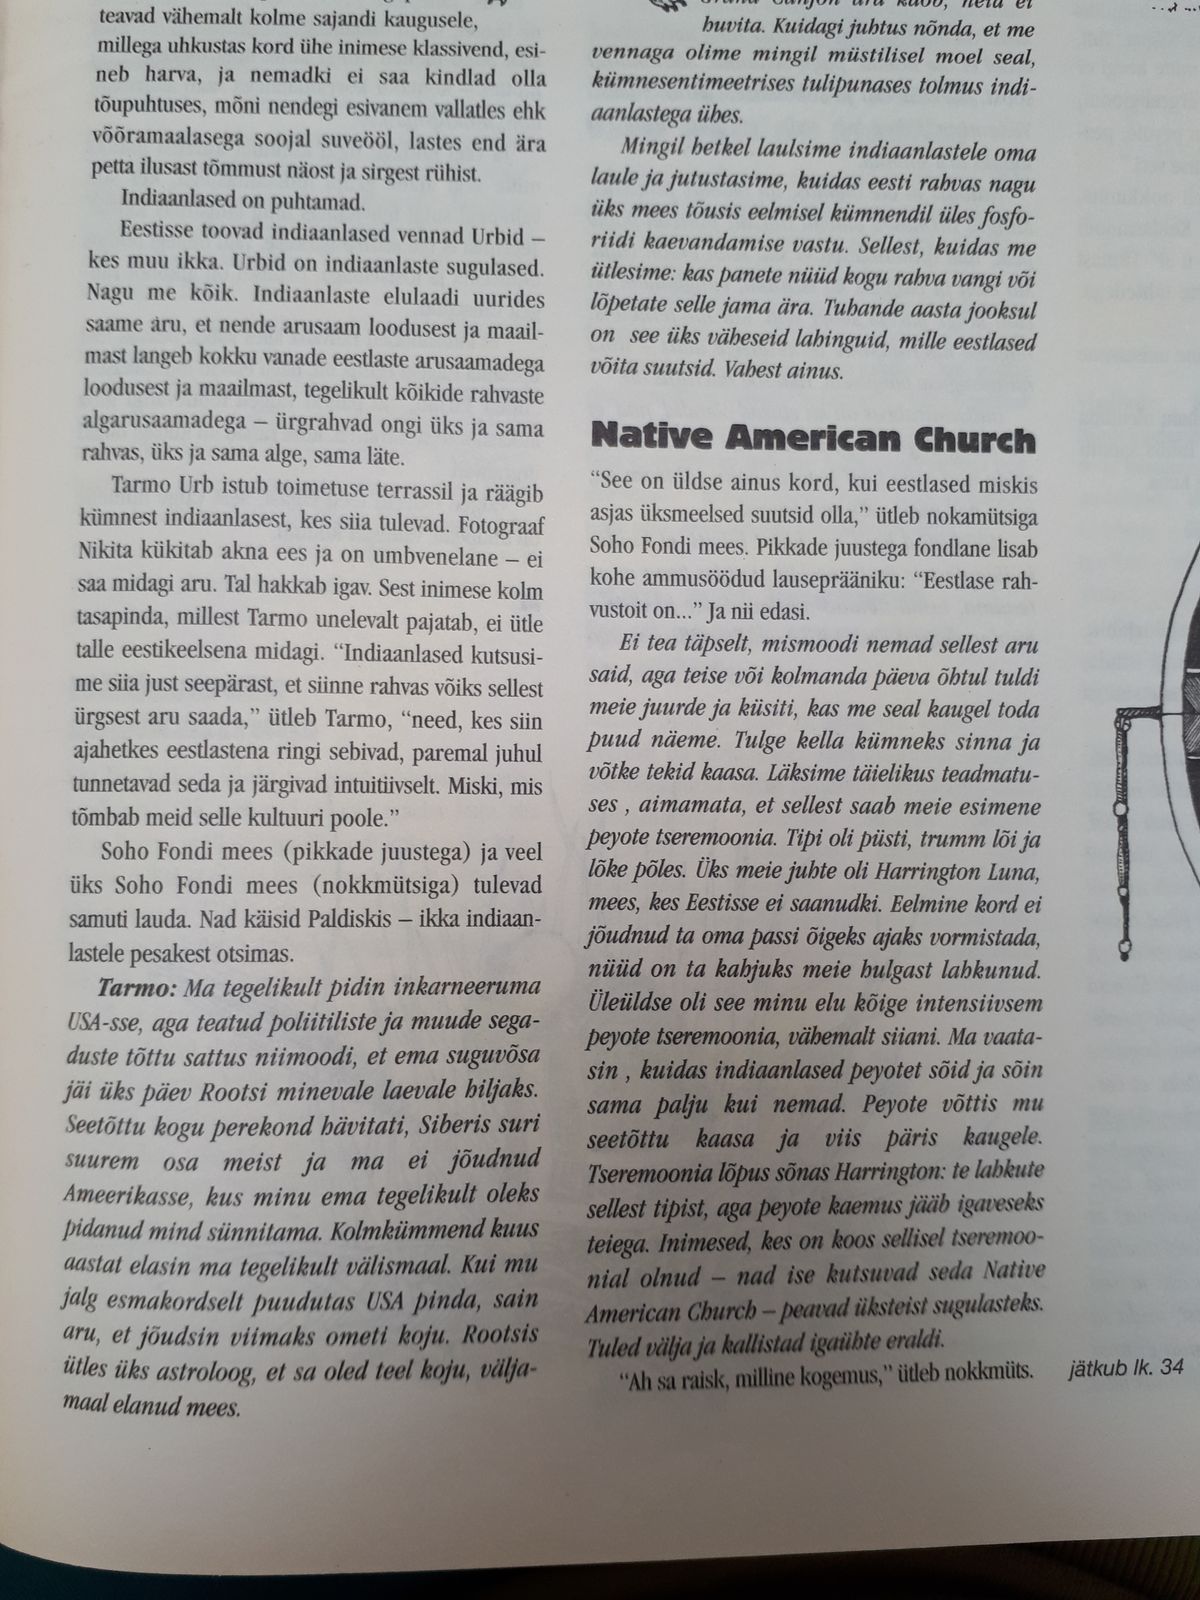 Lõik Urbide intekast 8/99 KesKus ajalehes, mehed käisid USAs Peyote tseremoonial.